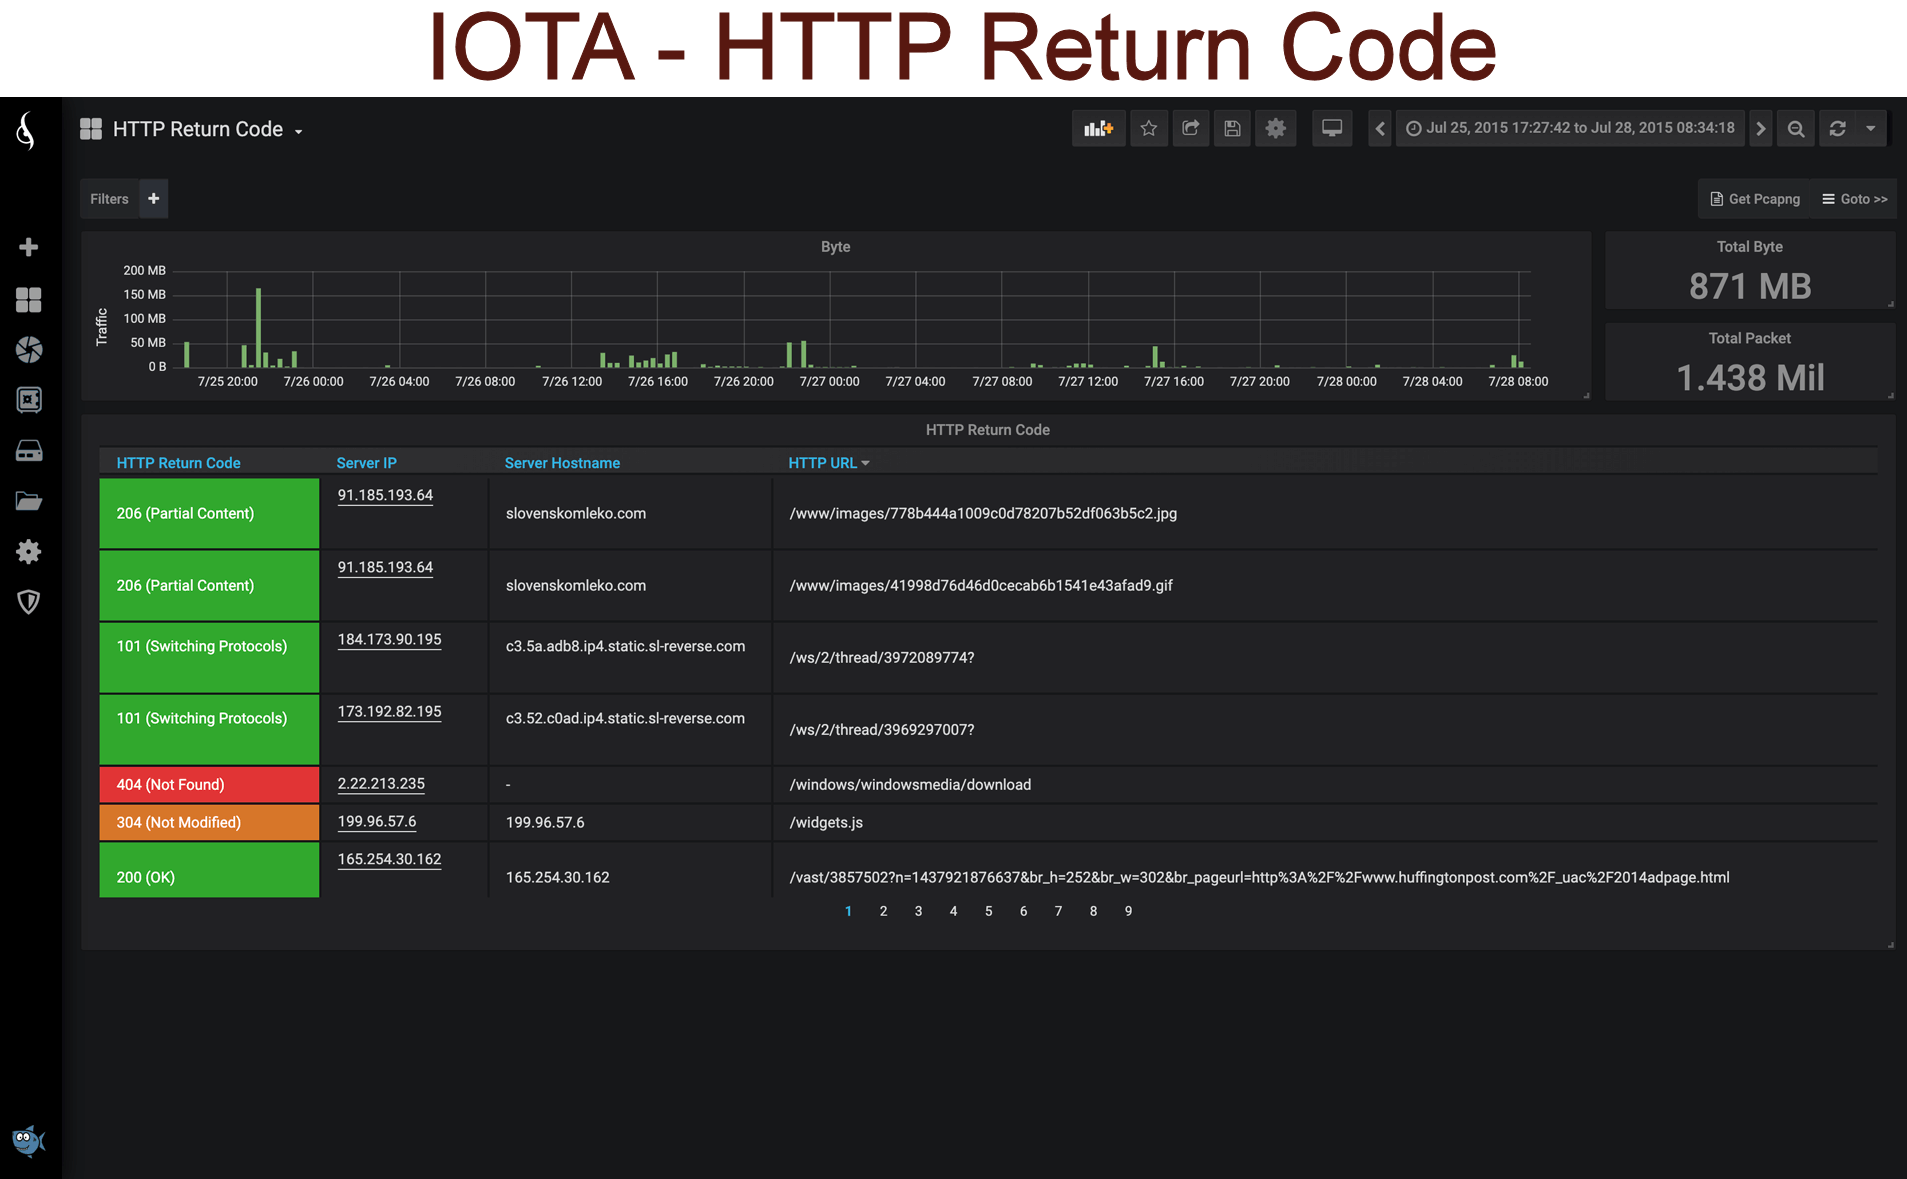 IOTA - HTTP Return Code